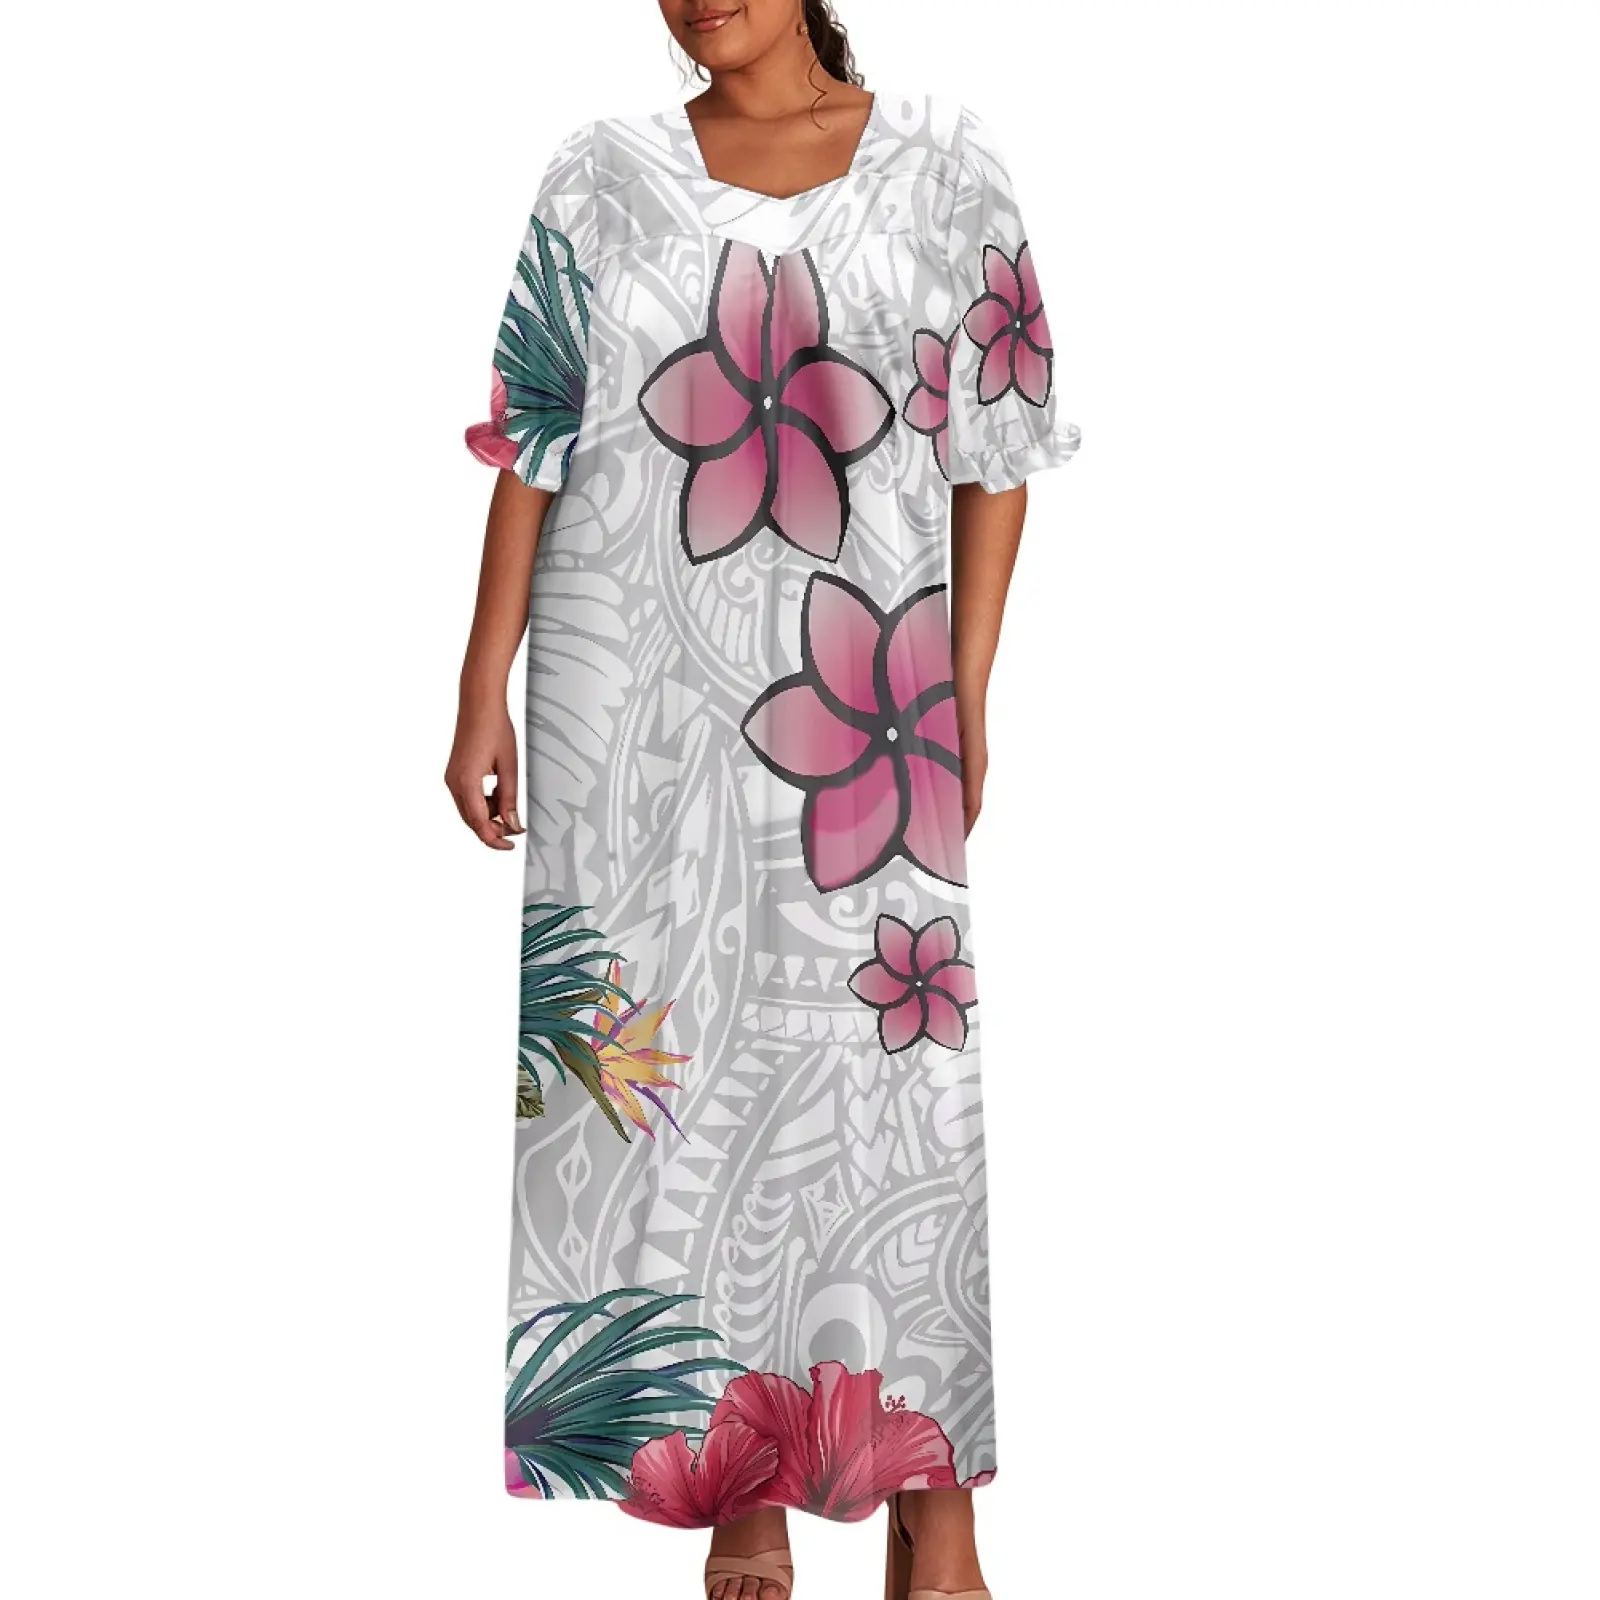 Miglior prezzo Vintage personalizzato polinesia Hawaii stampa floreale Micronesia Mumu Muumuu isola con volant manica lunga a sbuffo abito da donna